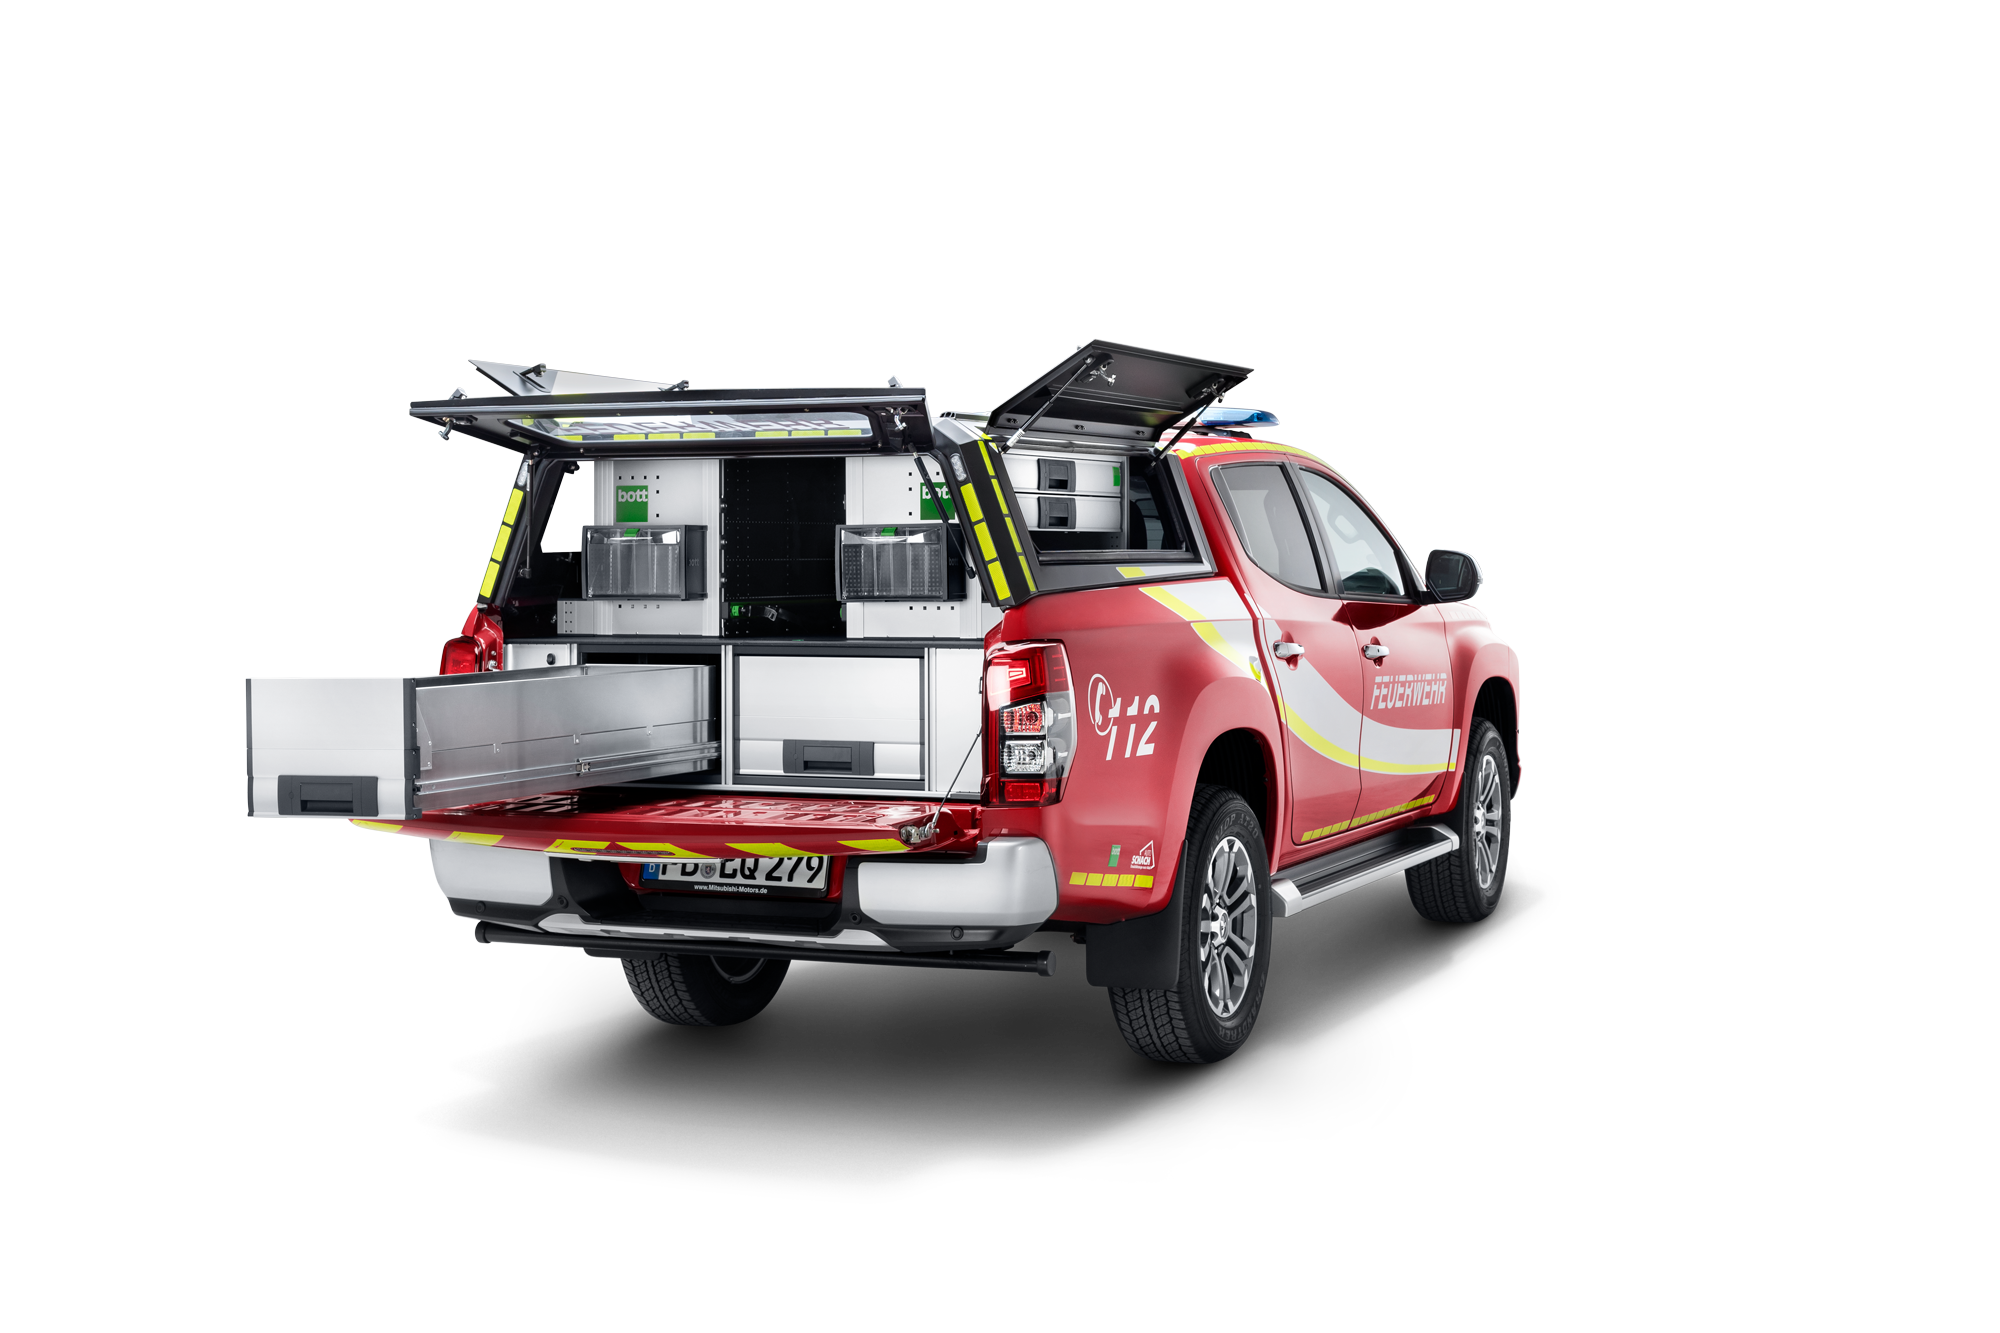 Fahrzeugeinrichtung für Pritschenfahrzeuge, Beispielaustattung für ein Mitsubishi-Feuerwehrauto